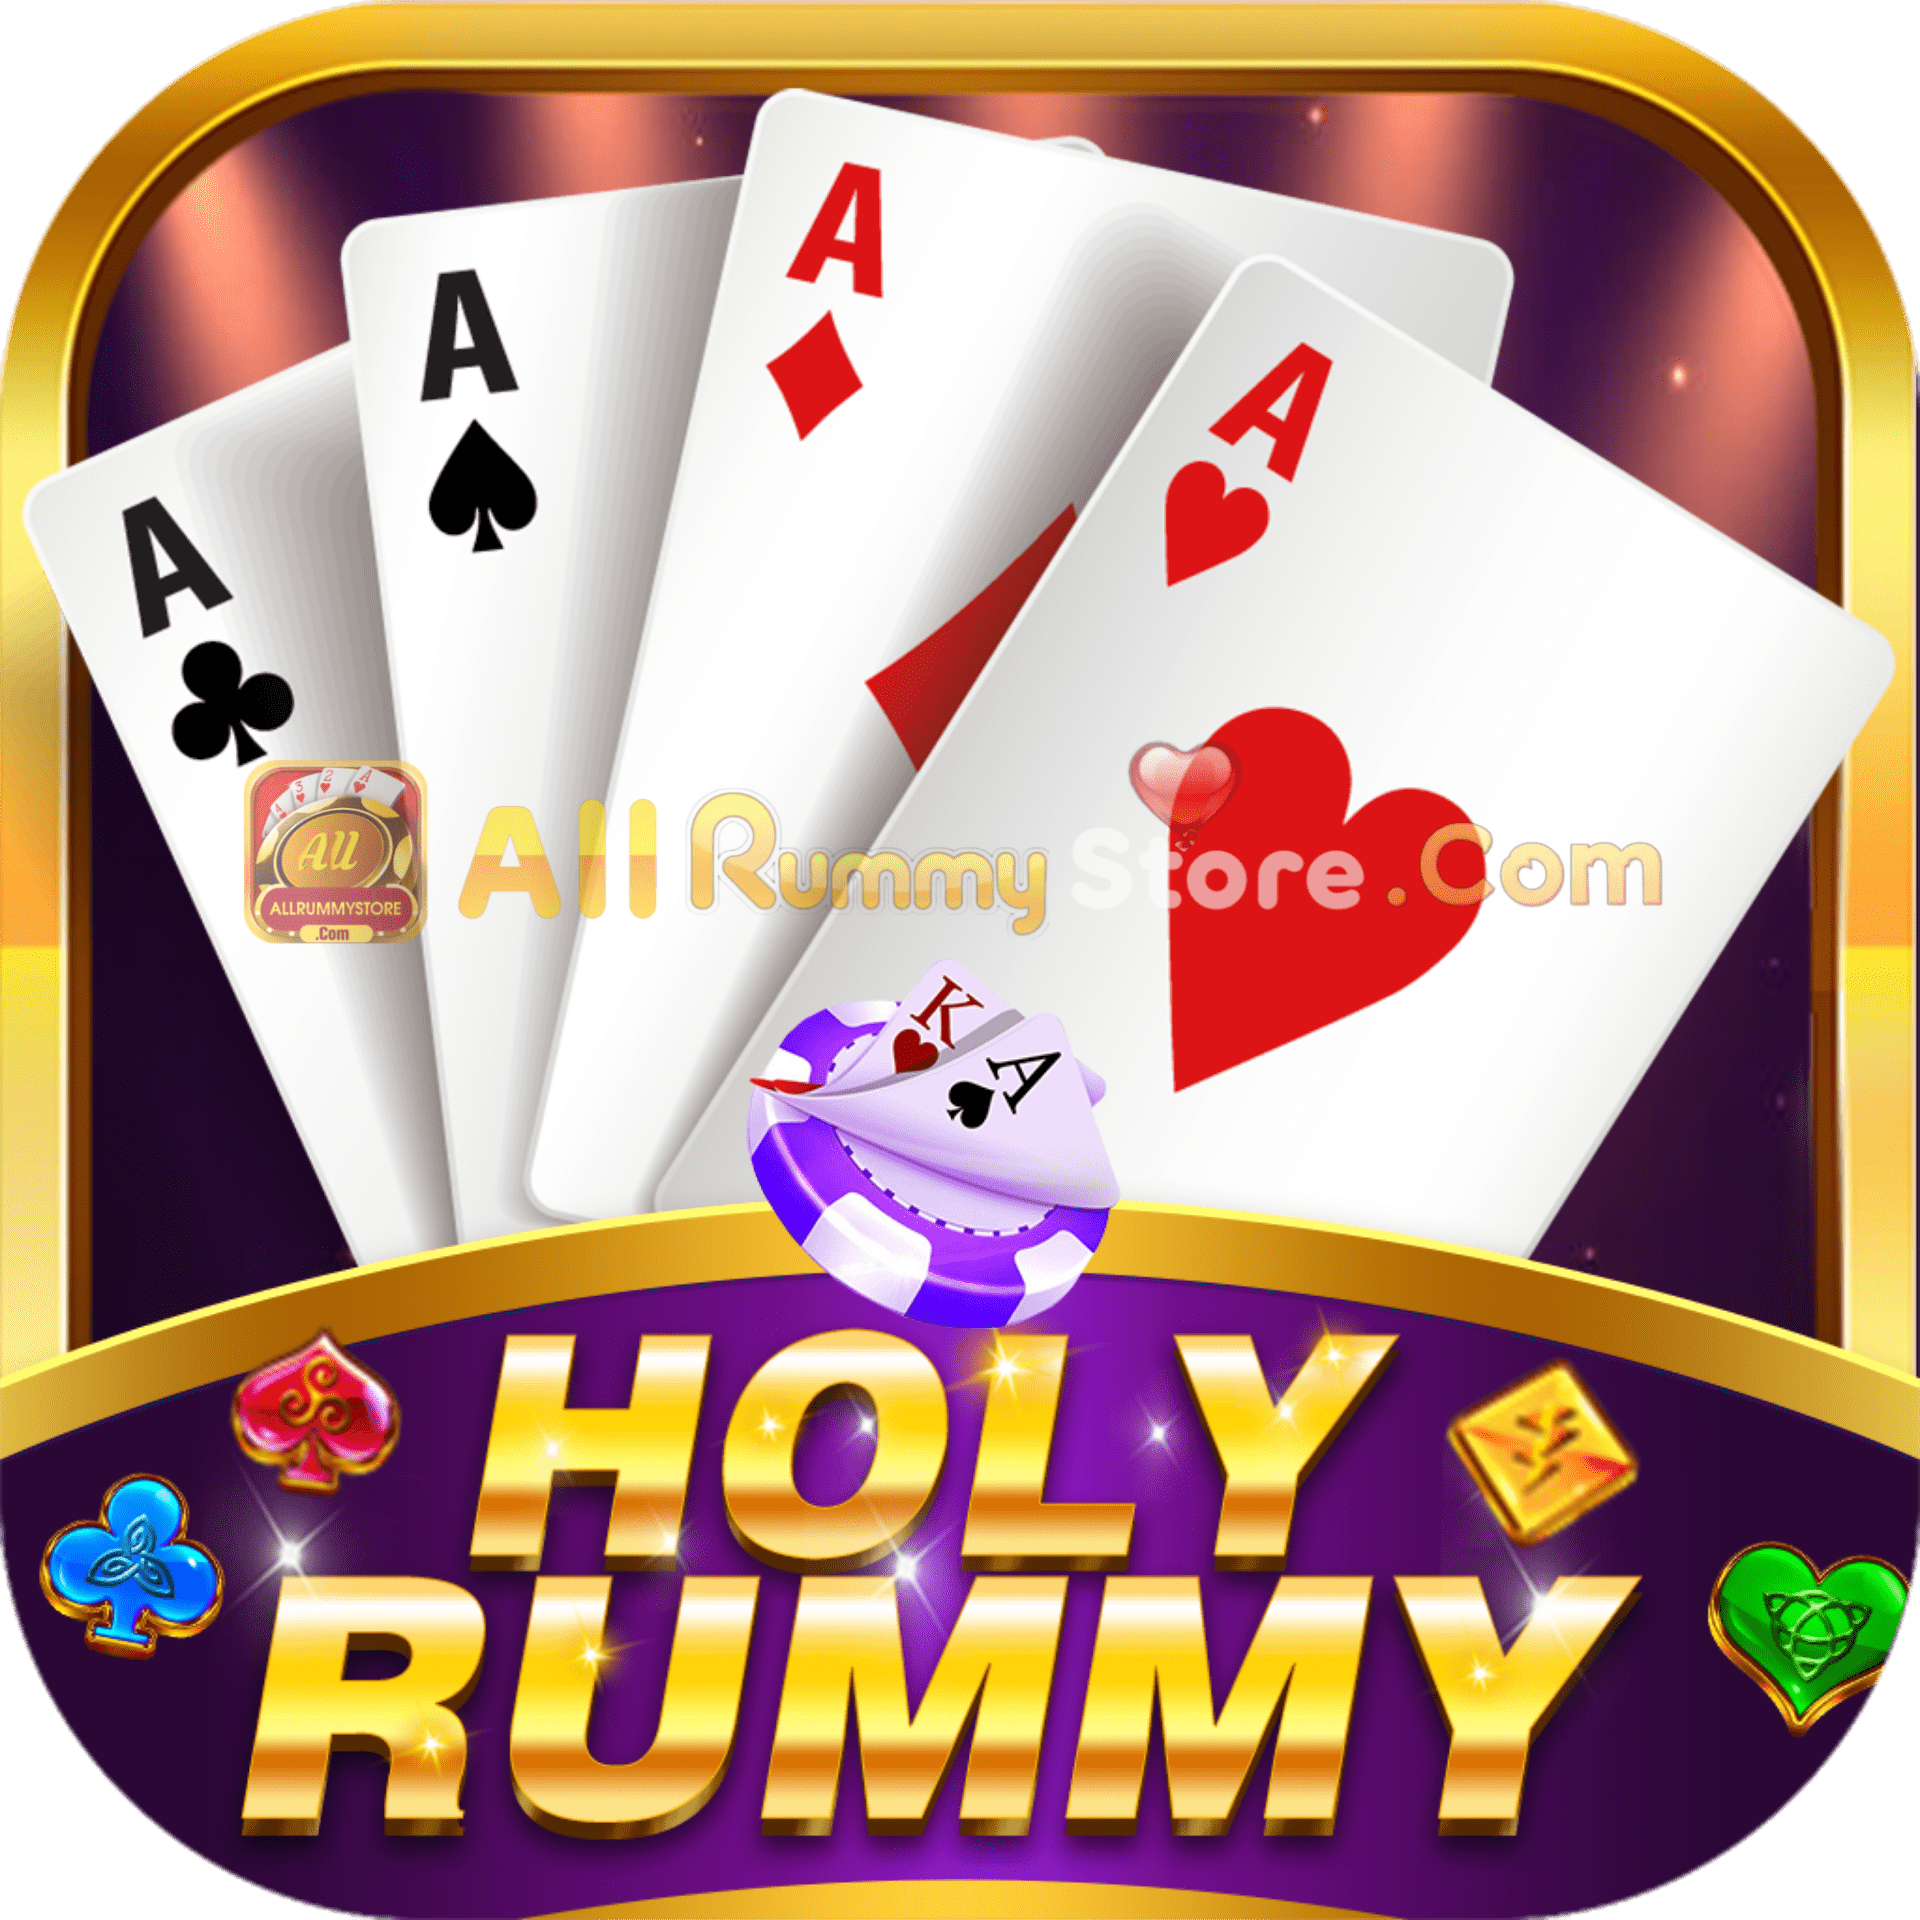 Holy Rummy - All Rummy App